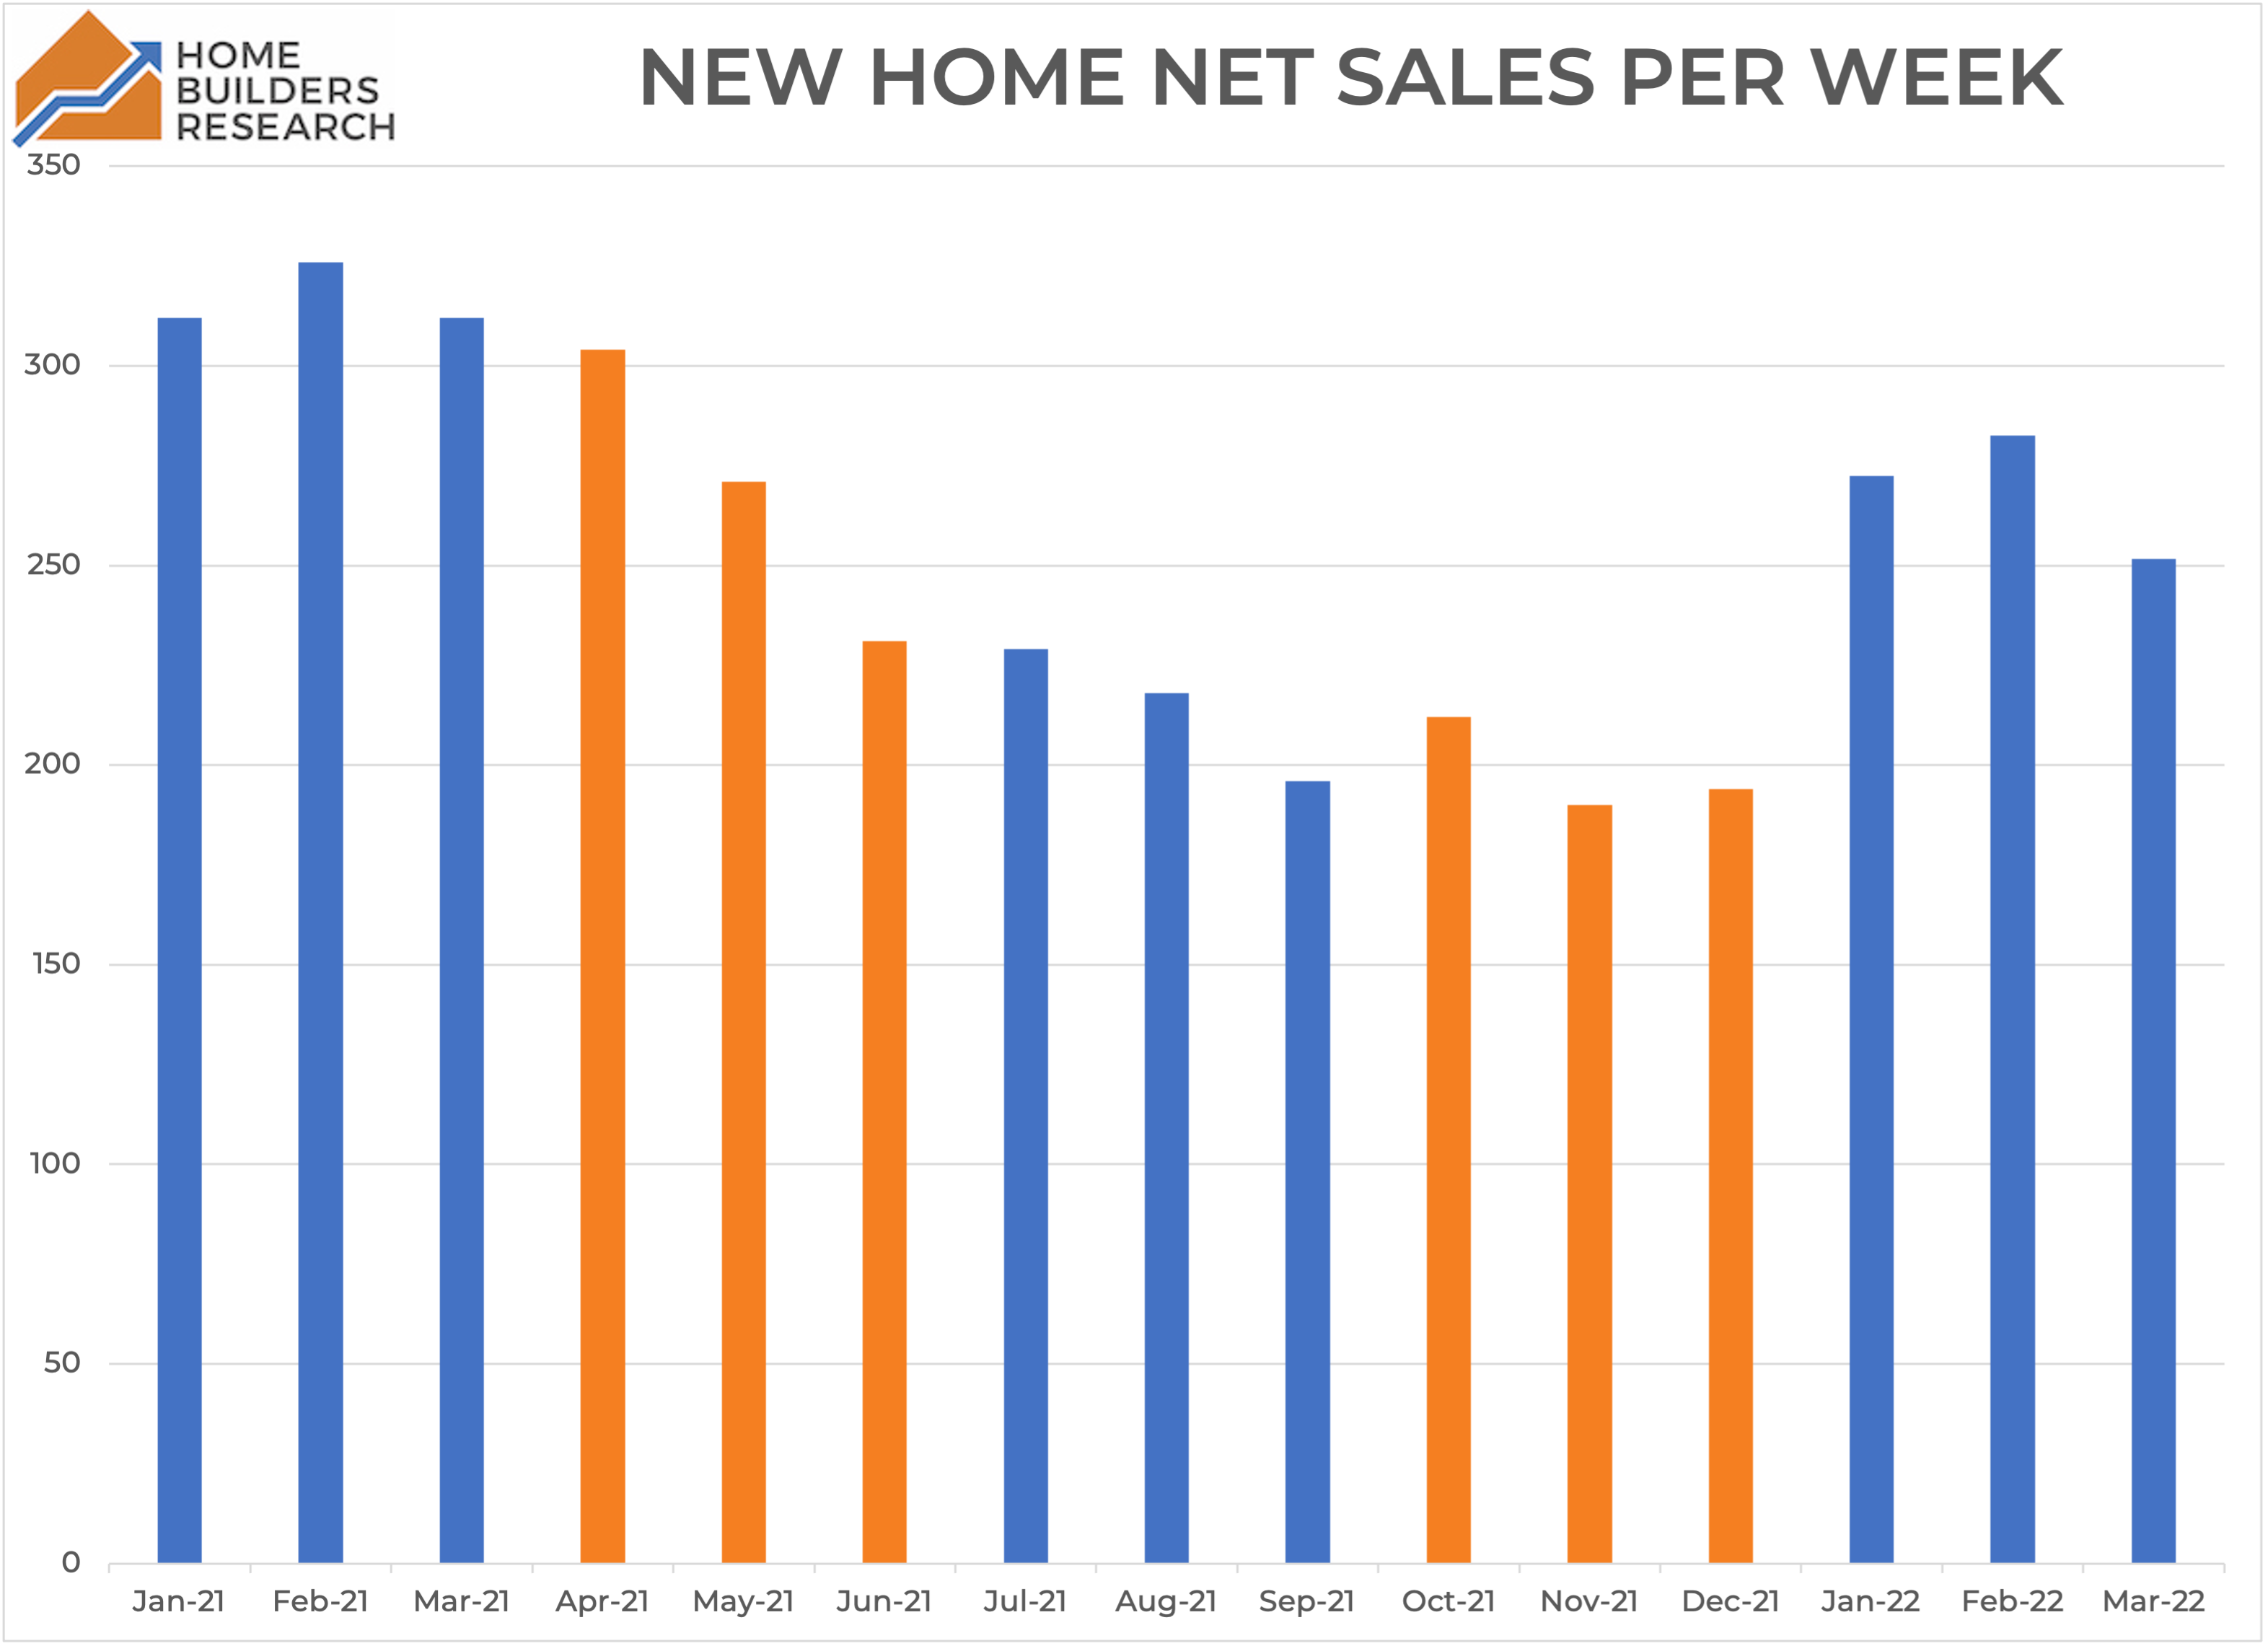 Average New Home Net Sales Per Week